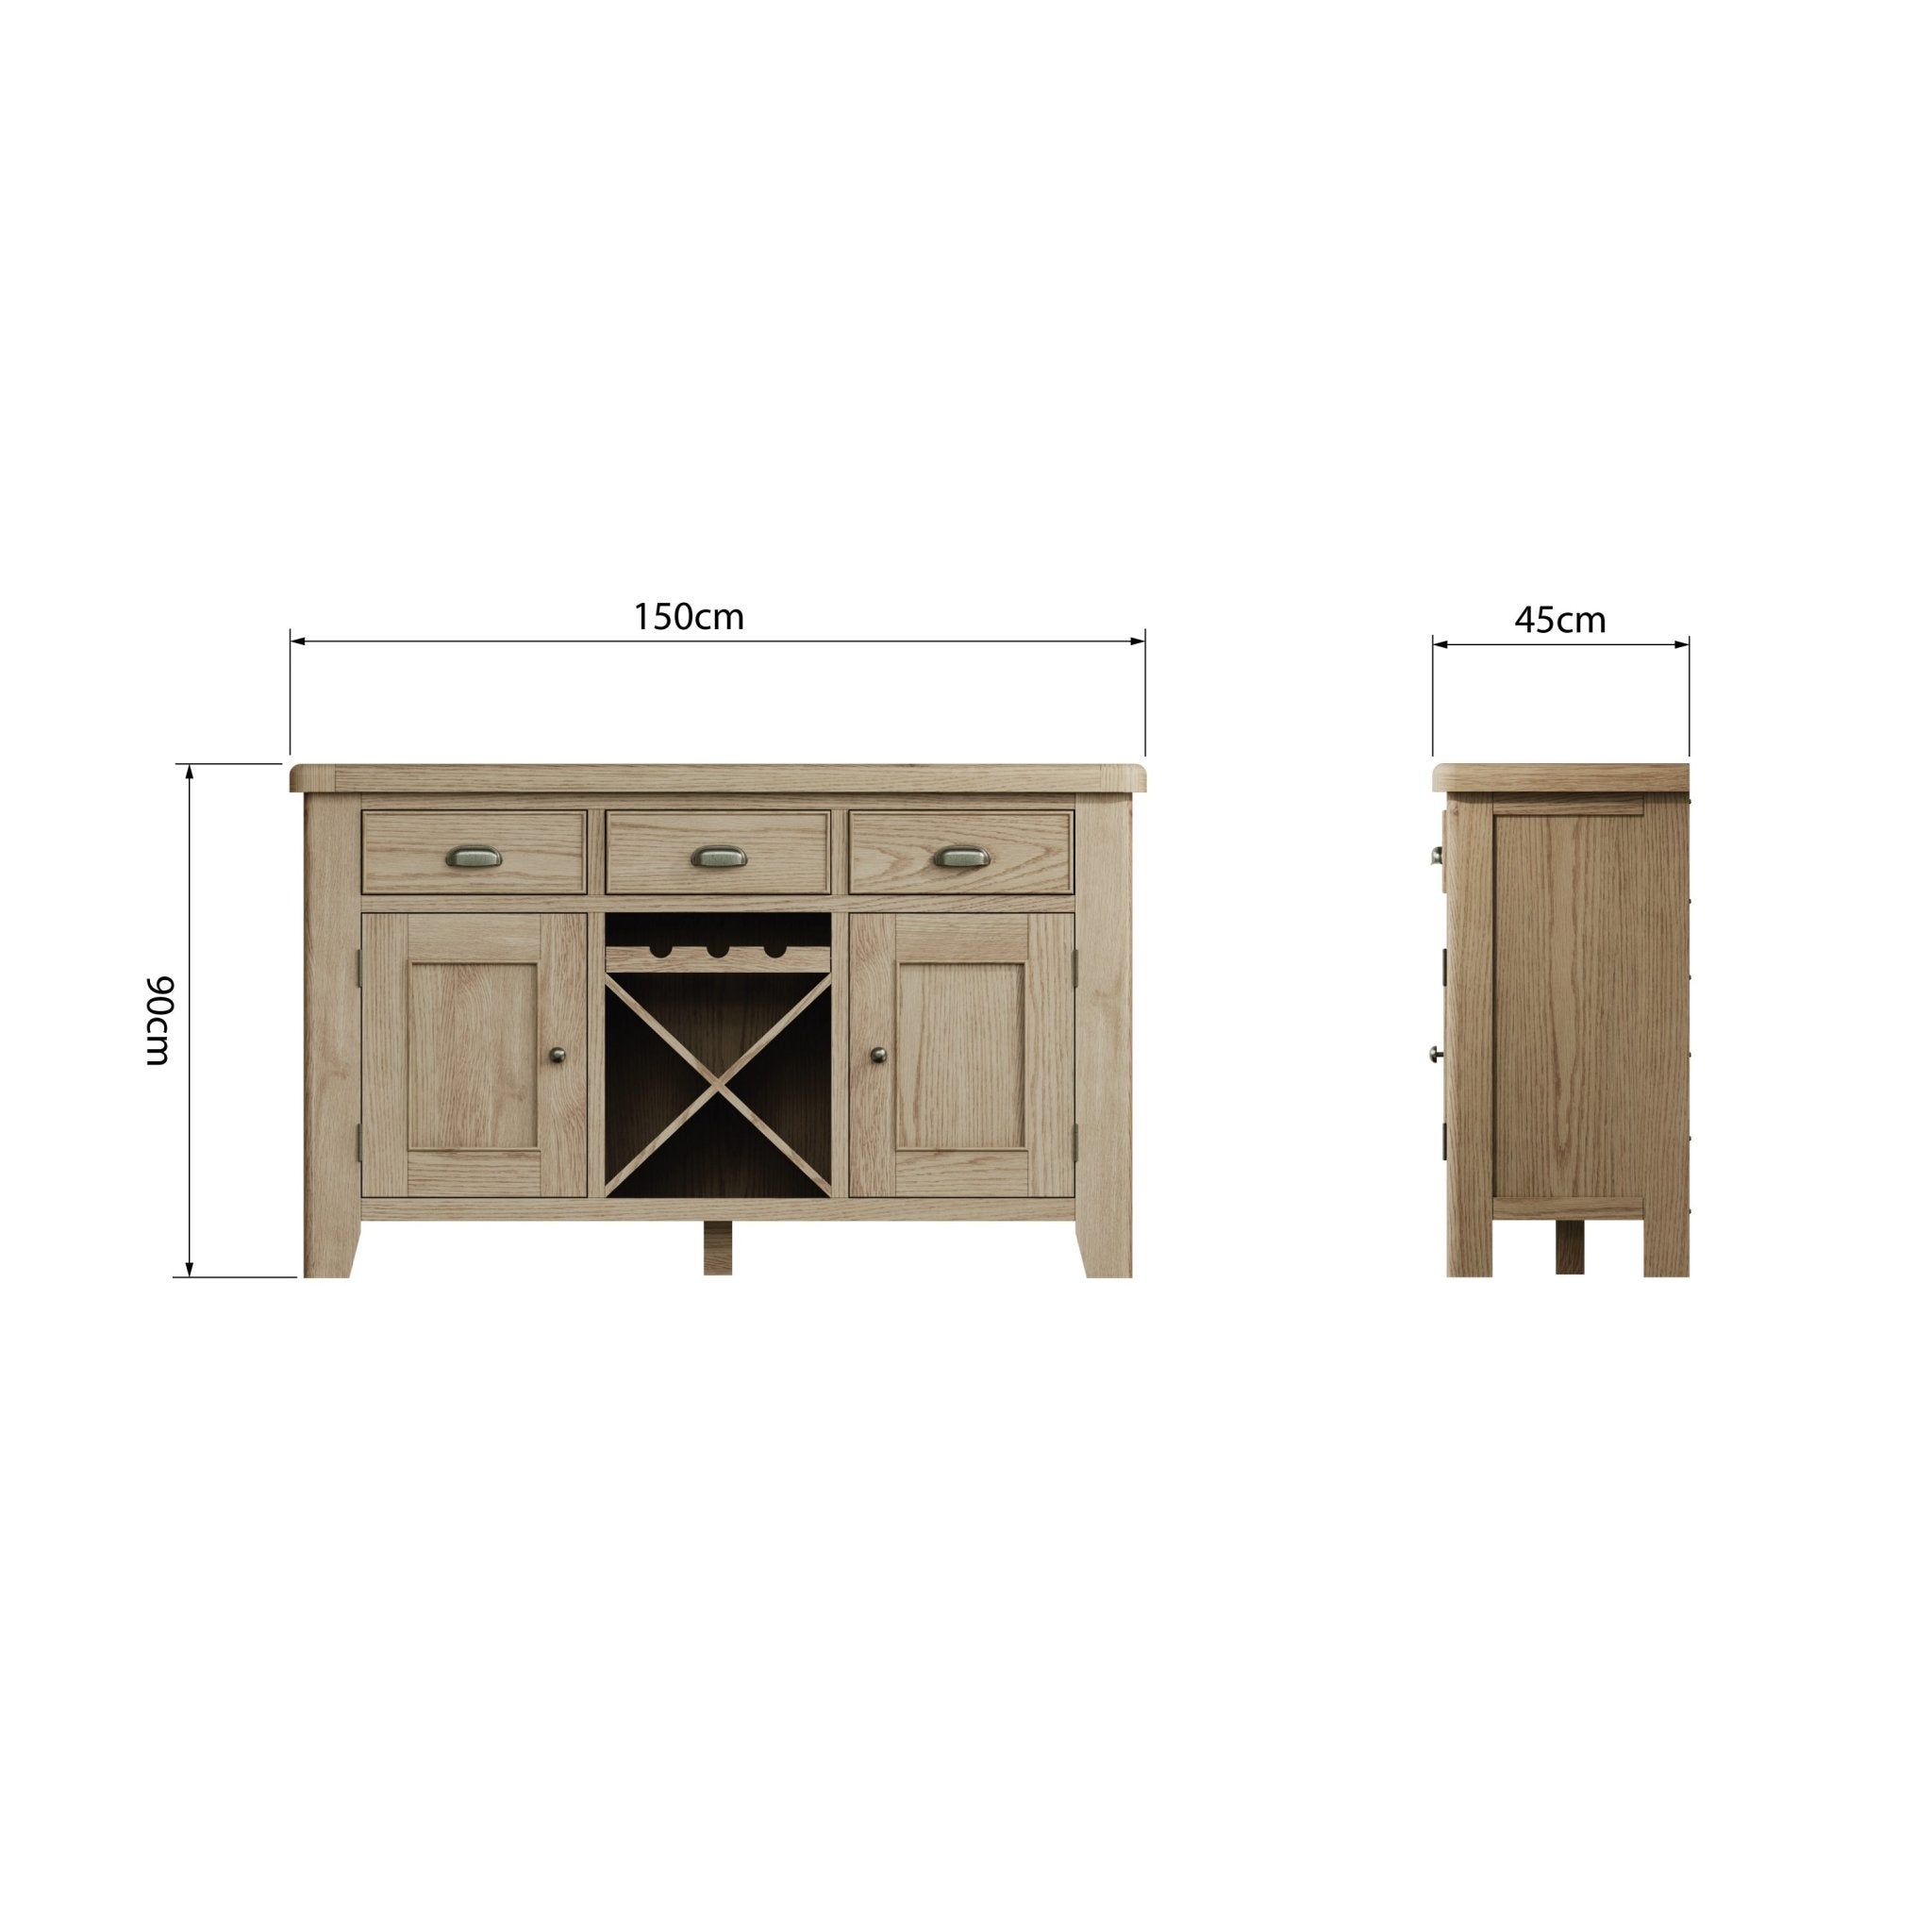 Rusper Oak 2 Door 3 Drawer Large Sideboard with Wine Storage - Duck Barn Interiors